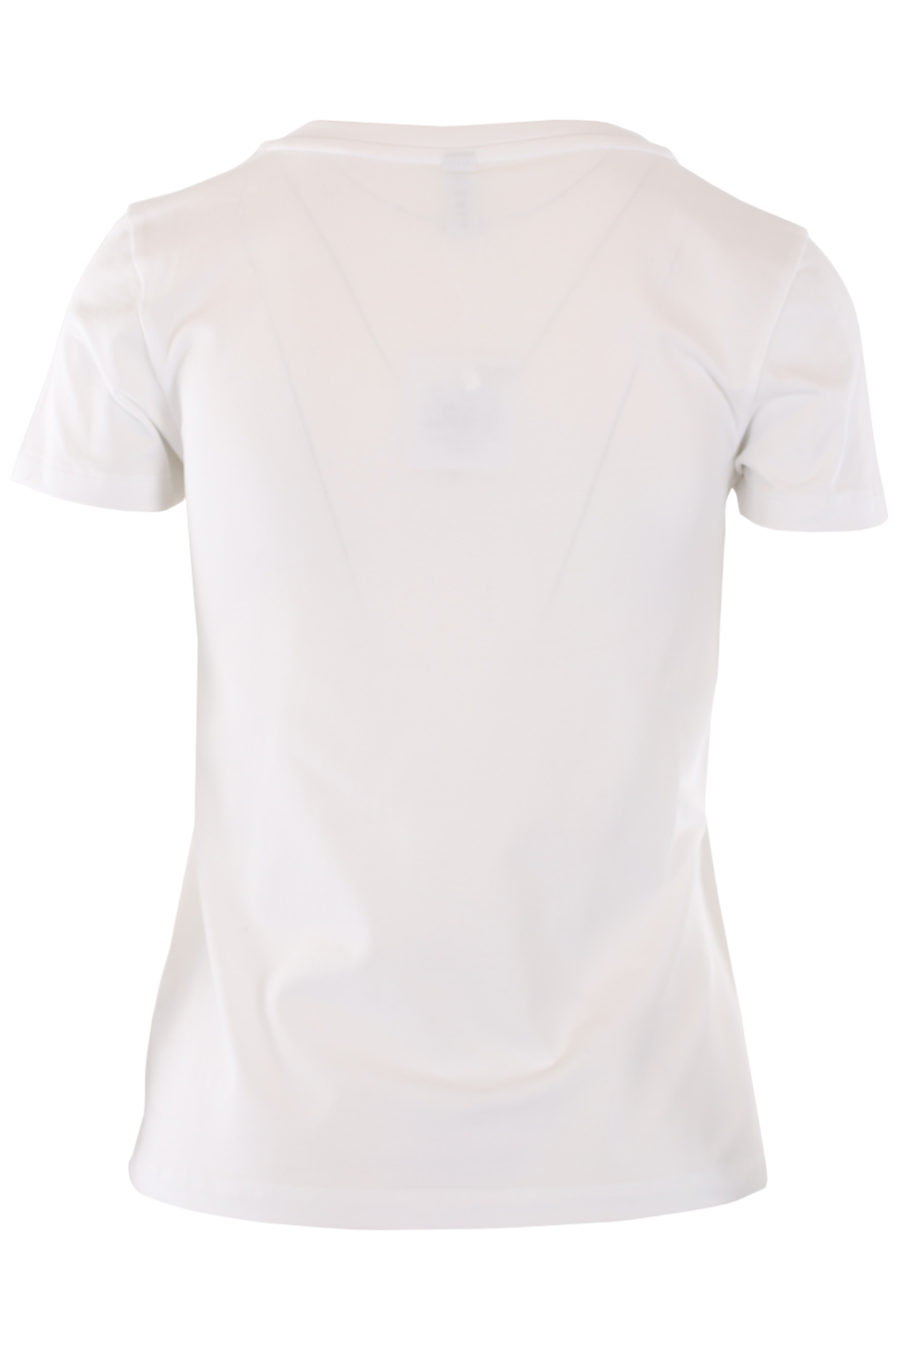 Camiseta blanca con logo oso "underbear" - IMG 0759